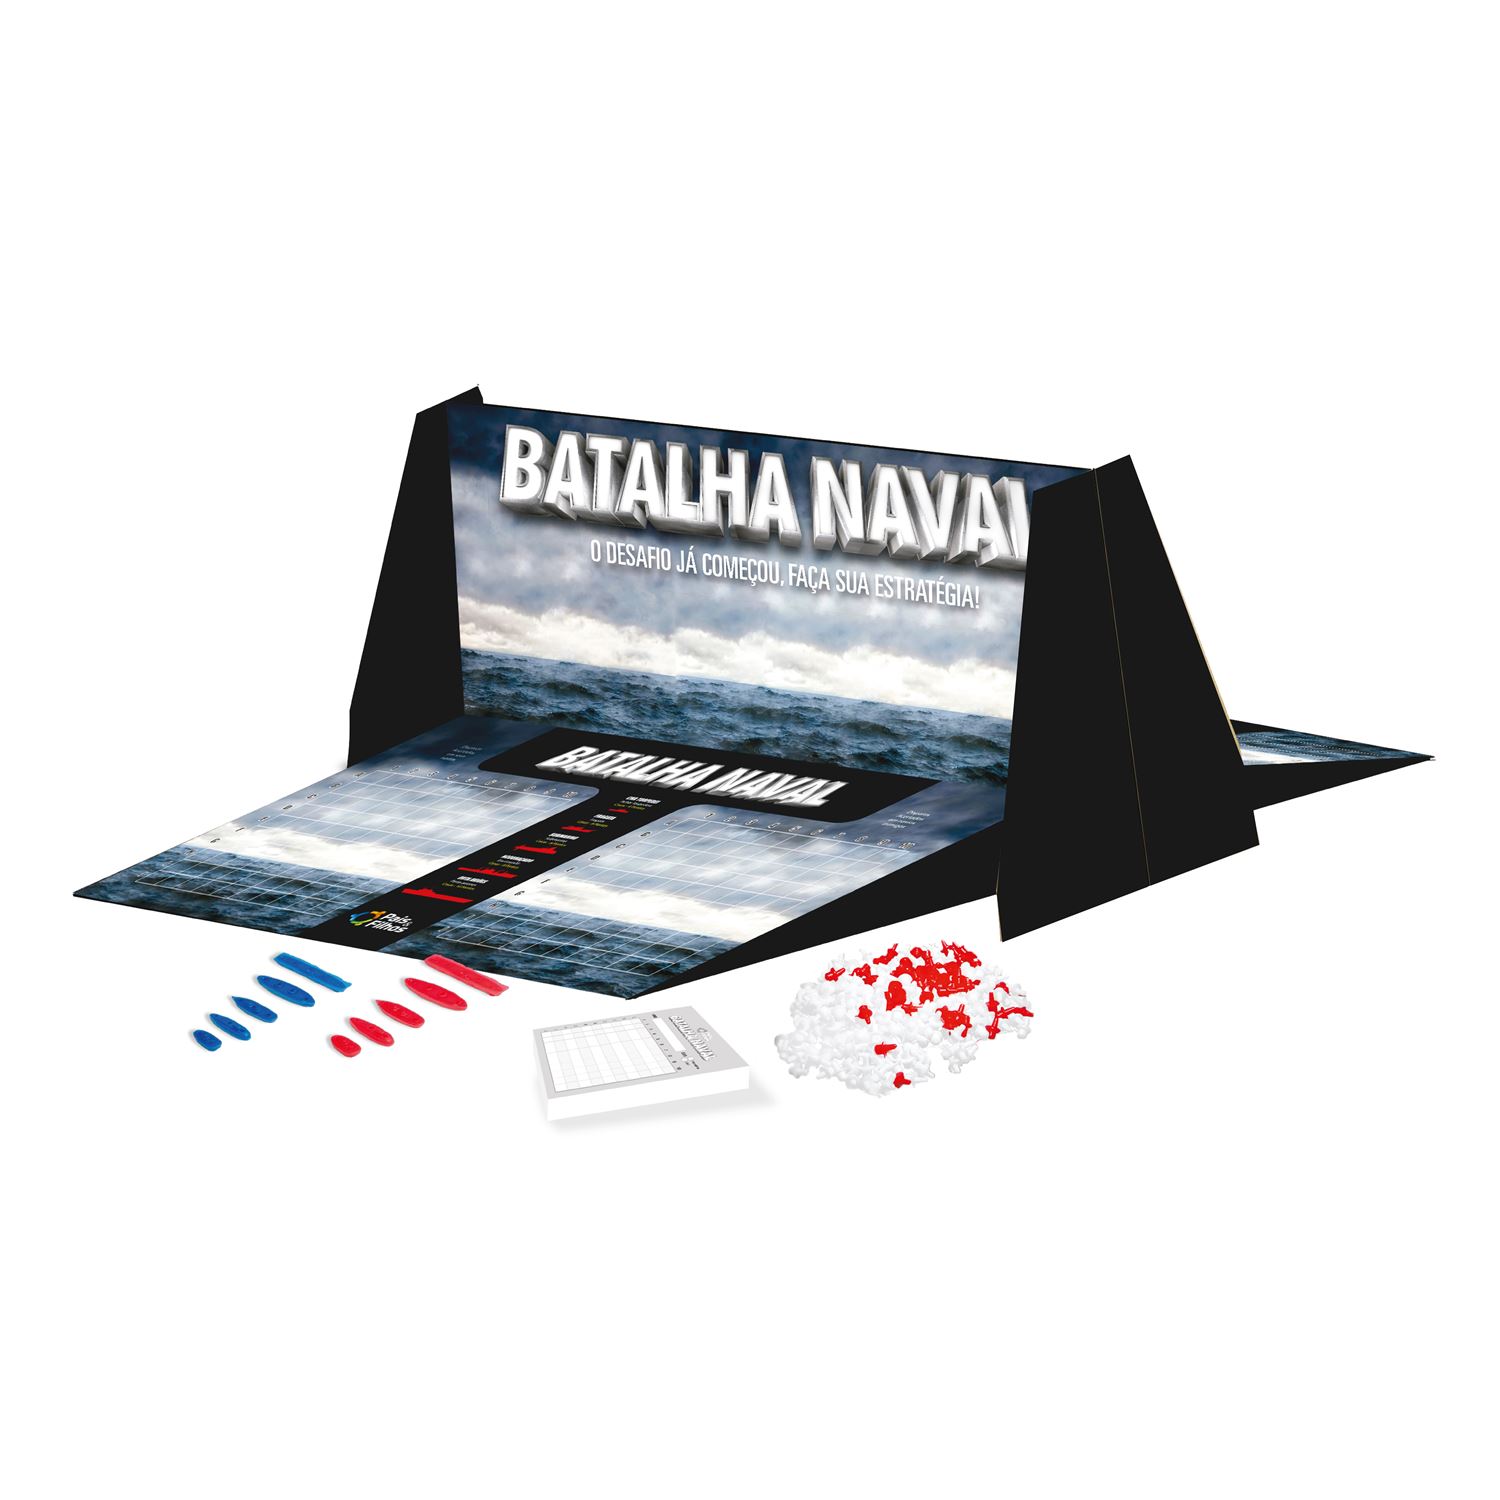 Correio da Manhã oferece jogo 'Batalha Naval' na compra do jornal - Vídeos  - Correio da Manhã